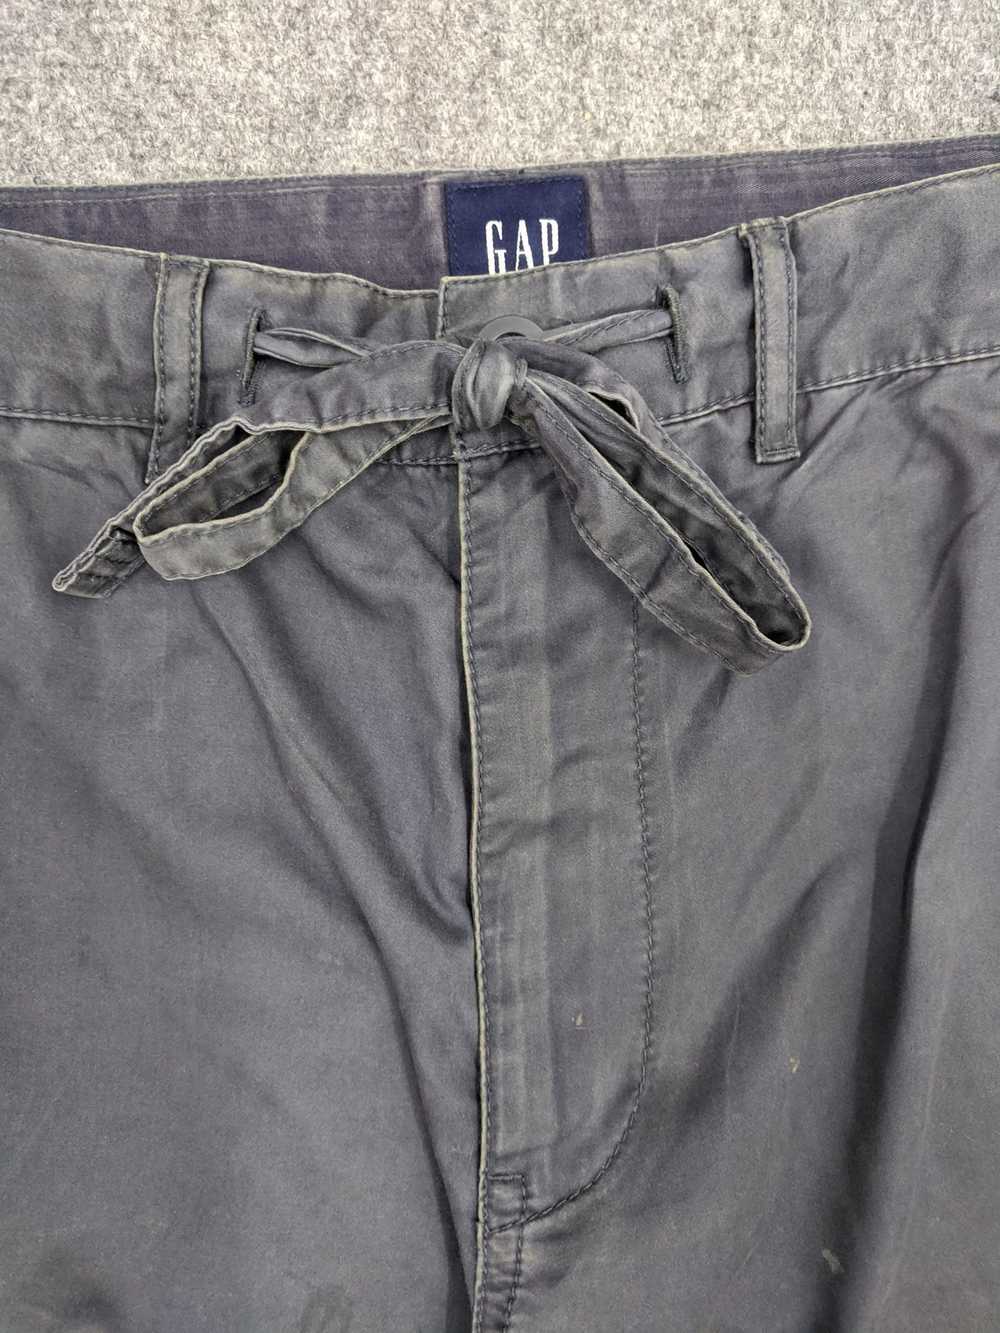 Gap GAP Cargo Pant Kanye West Style - image 8